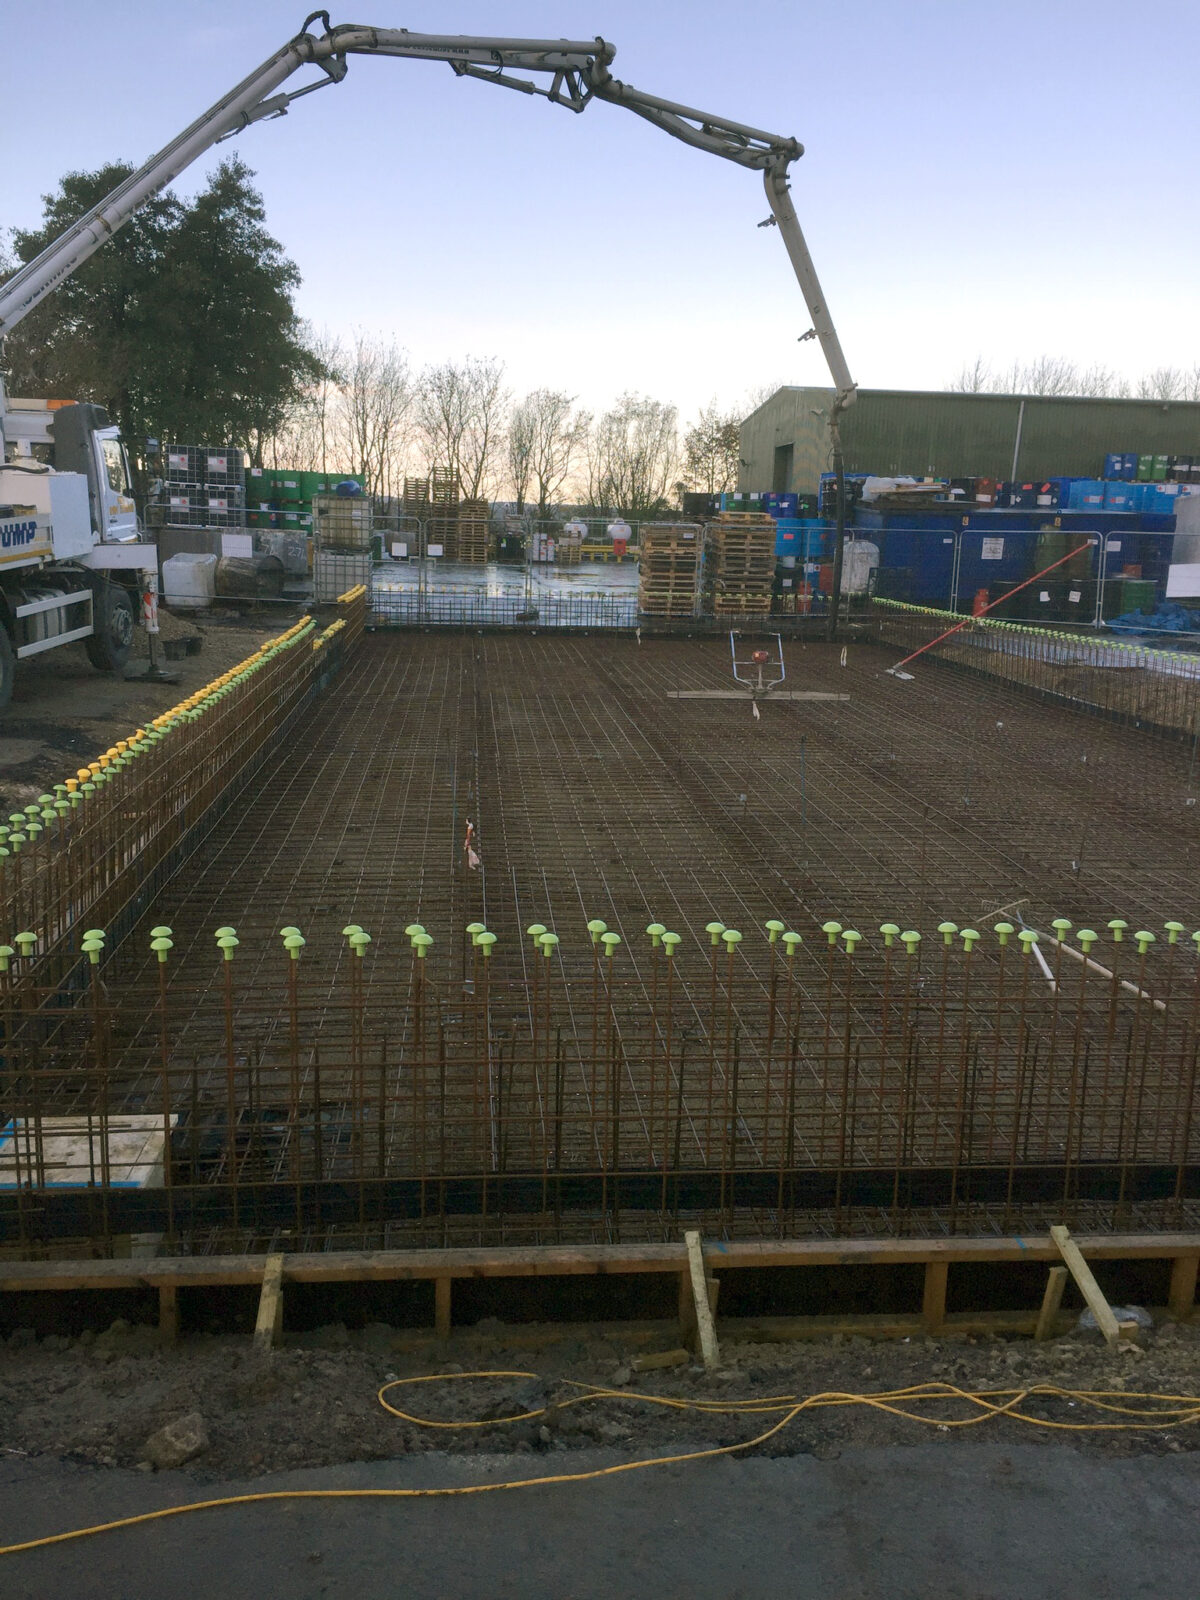 Bund construction underway – pumping concrete